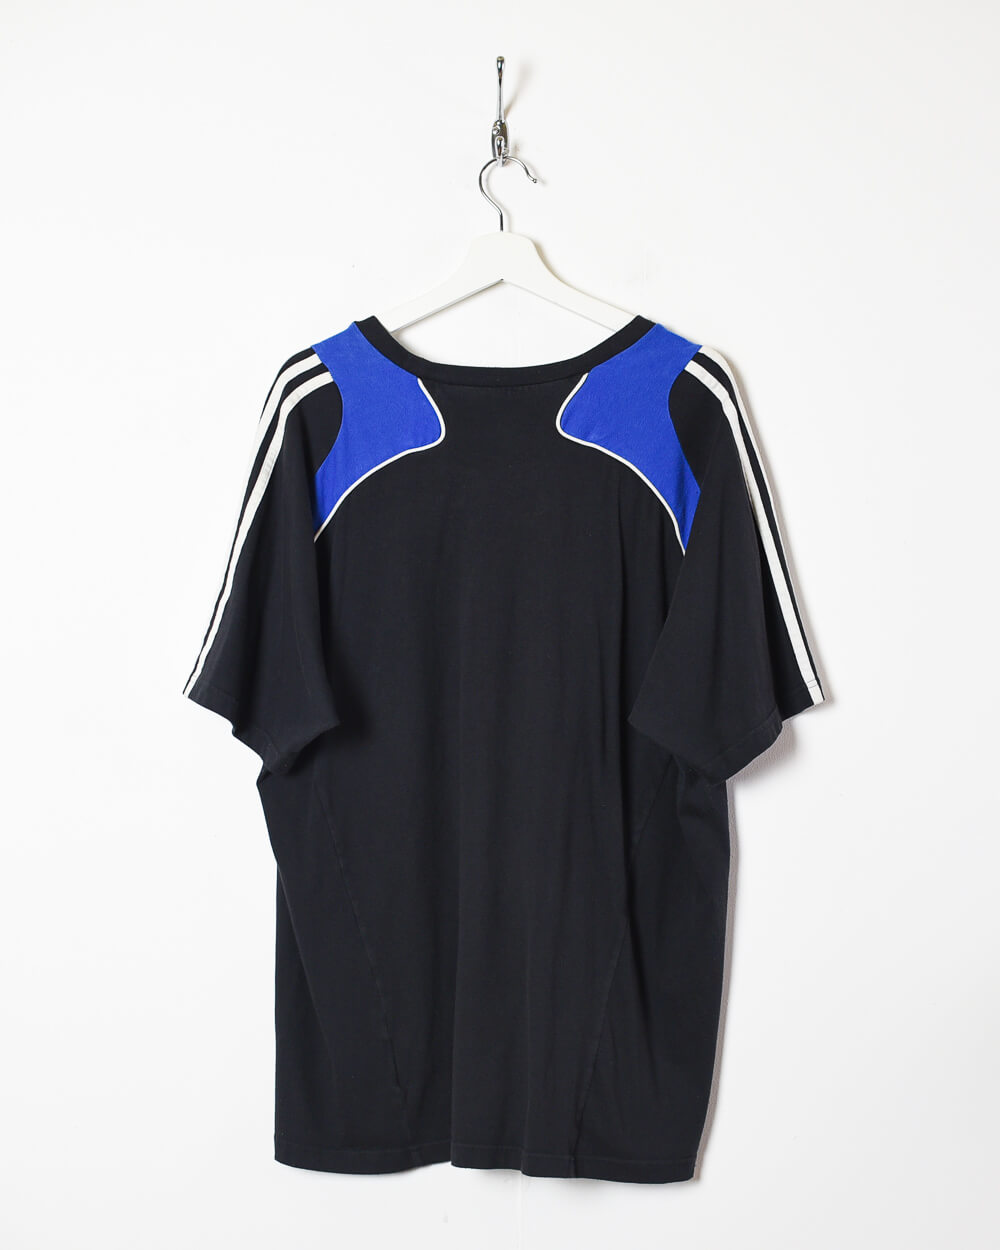 Black Adidas 2006/07 Chelsea FC Training Shirt - X-Large